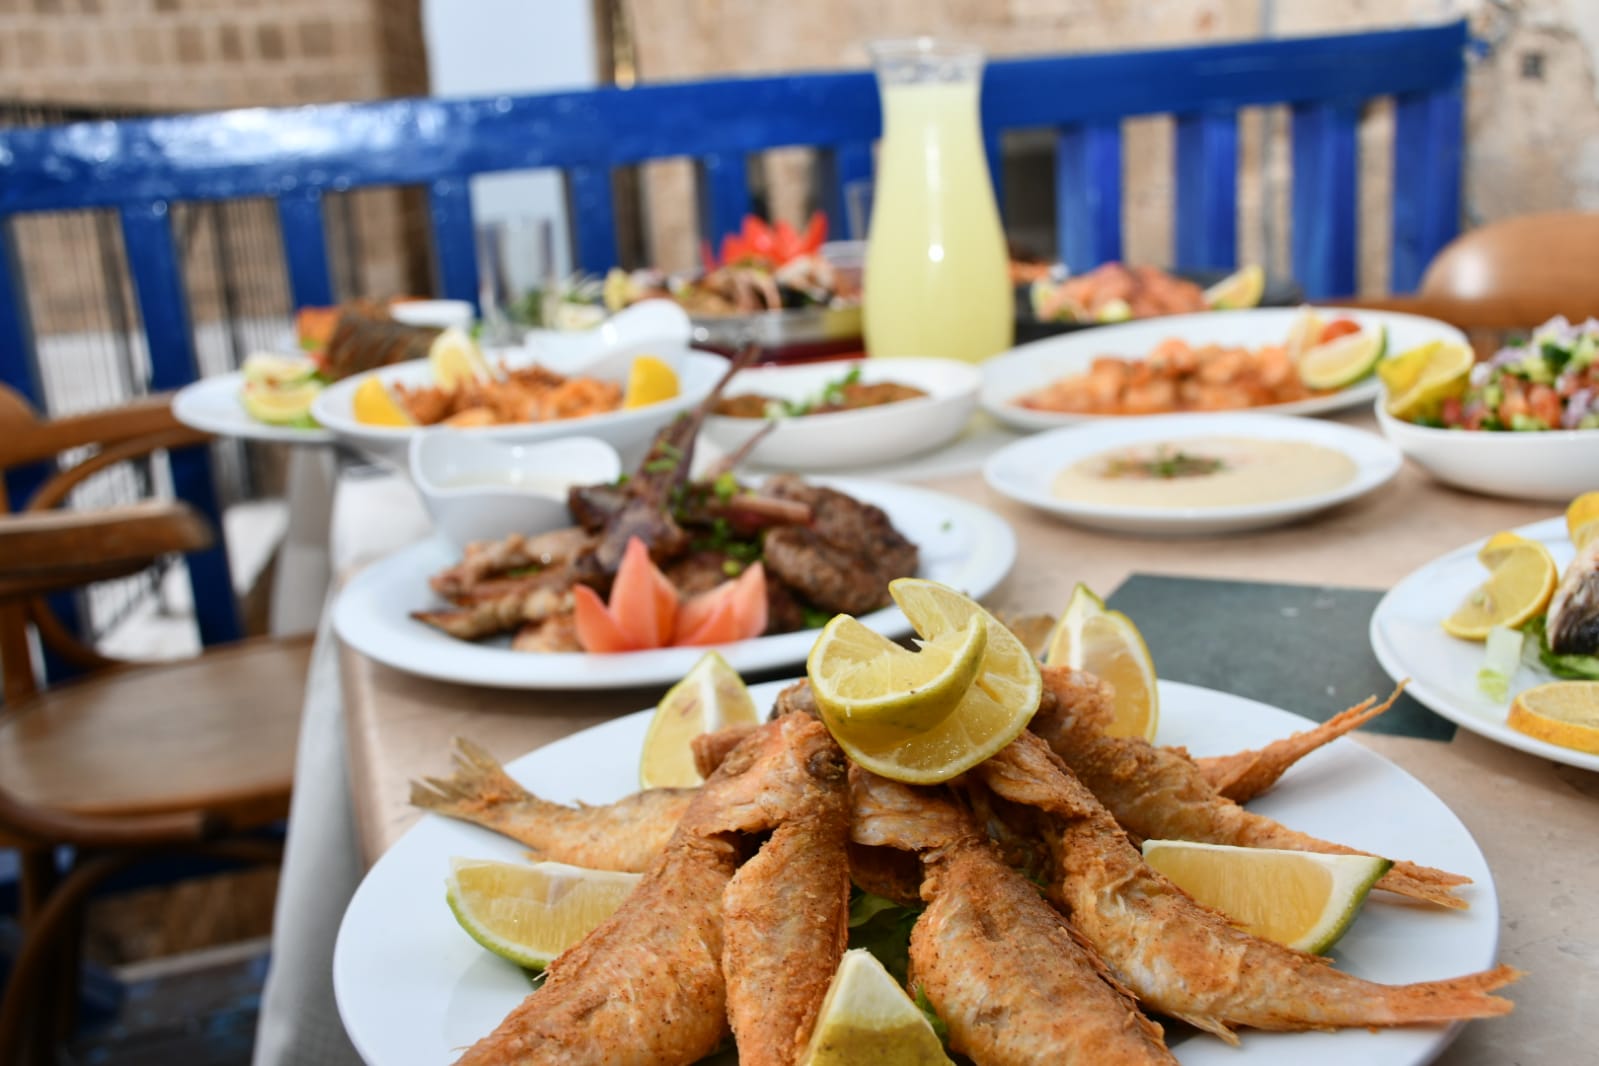 مطعم أبراج - أشهى وأفضل الوجبات البحرية الطازجة والمقبلات بانتظاركم اليوم وكل أيام الأسبوع